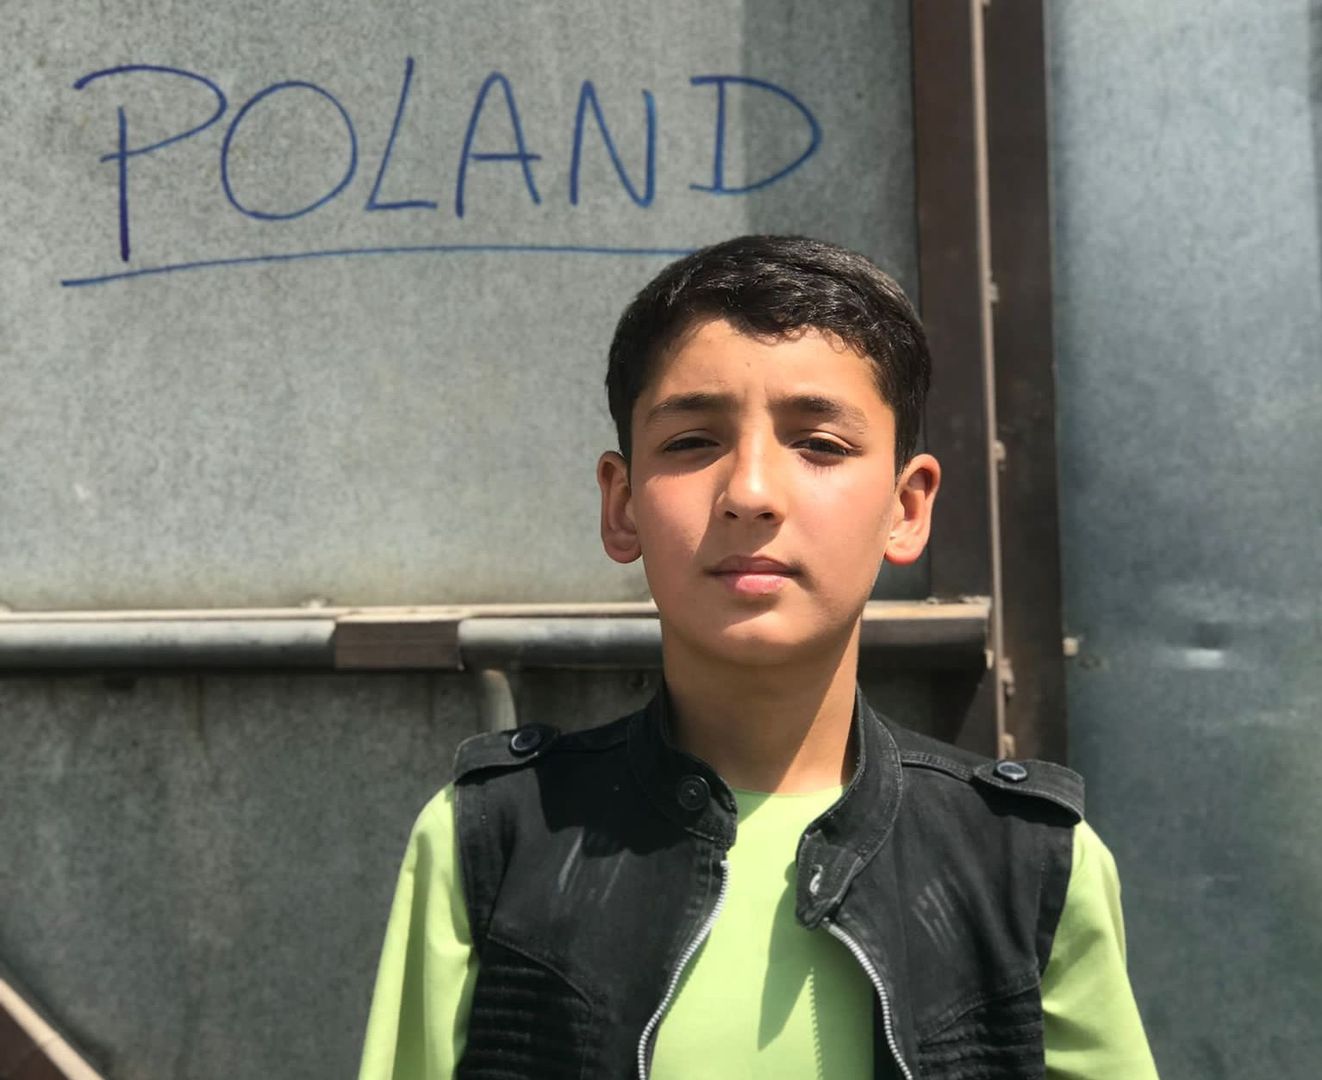 Dramat podczas ewakuacji. Polscy żołnierze znaleźli 13-letniego Afgańczyka